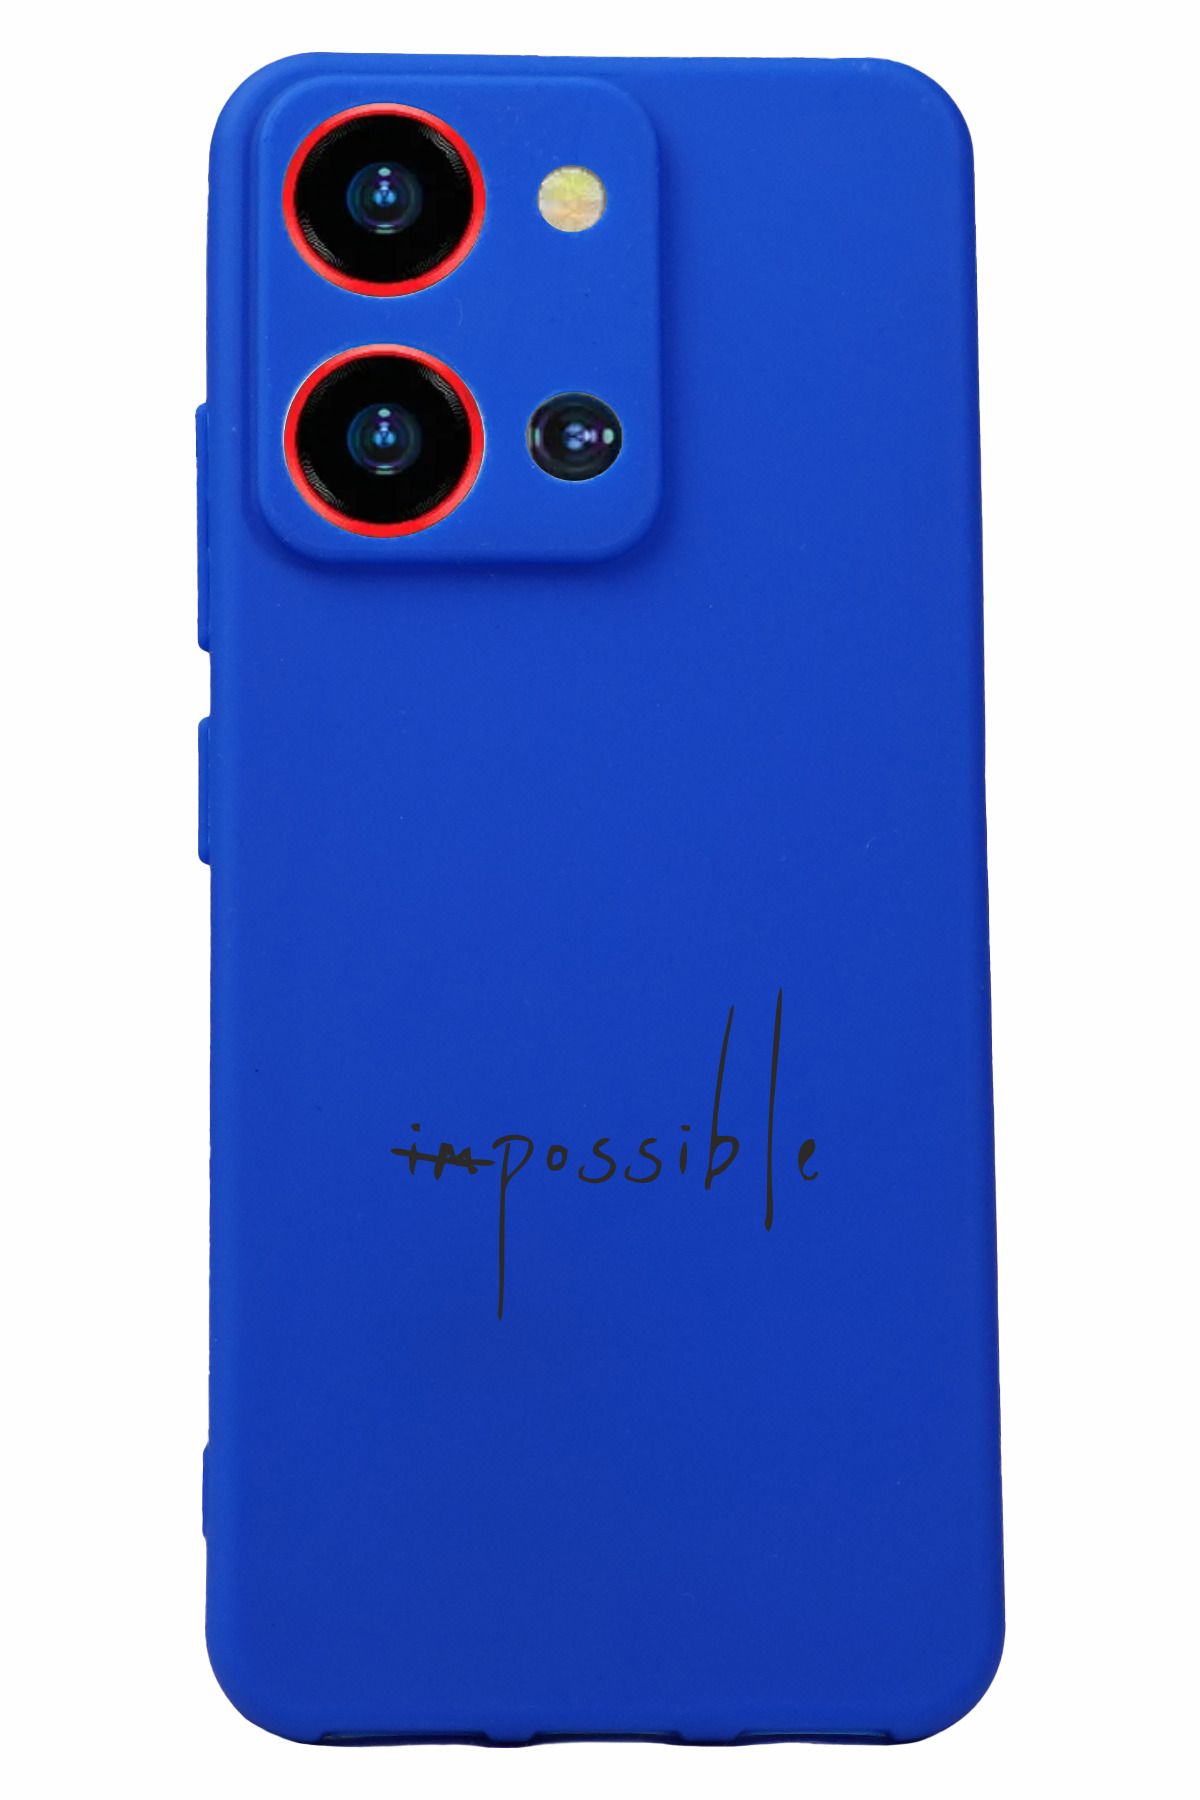 Reeder S19 Max Pro S Zoom Uyumlu Kamera Korumalı ve Tasarımlı Mavi Renk Silikon Kılıf